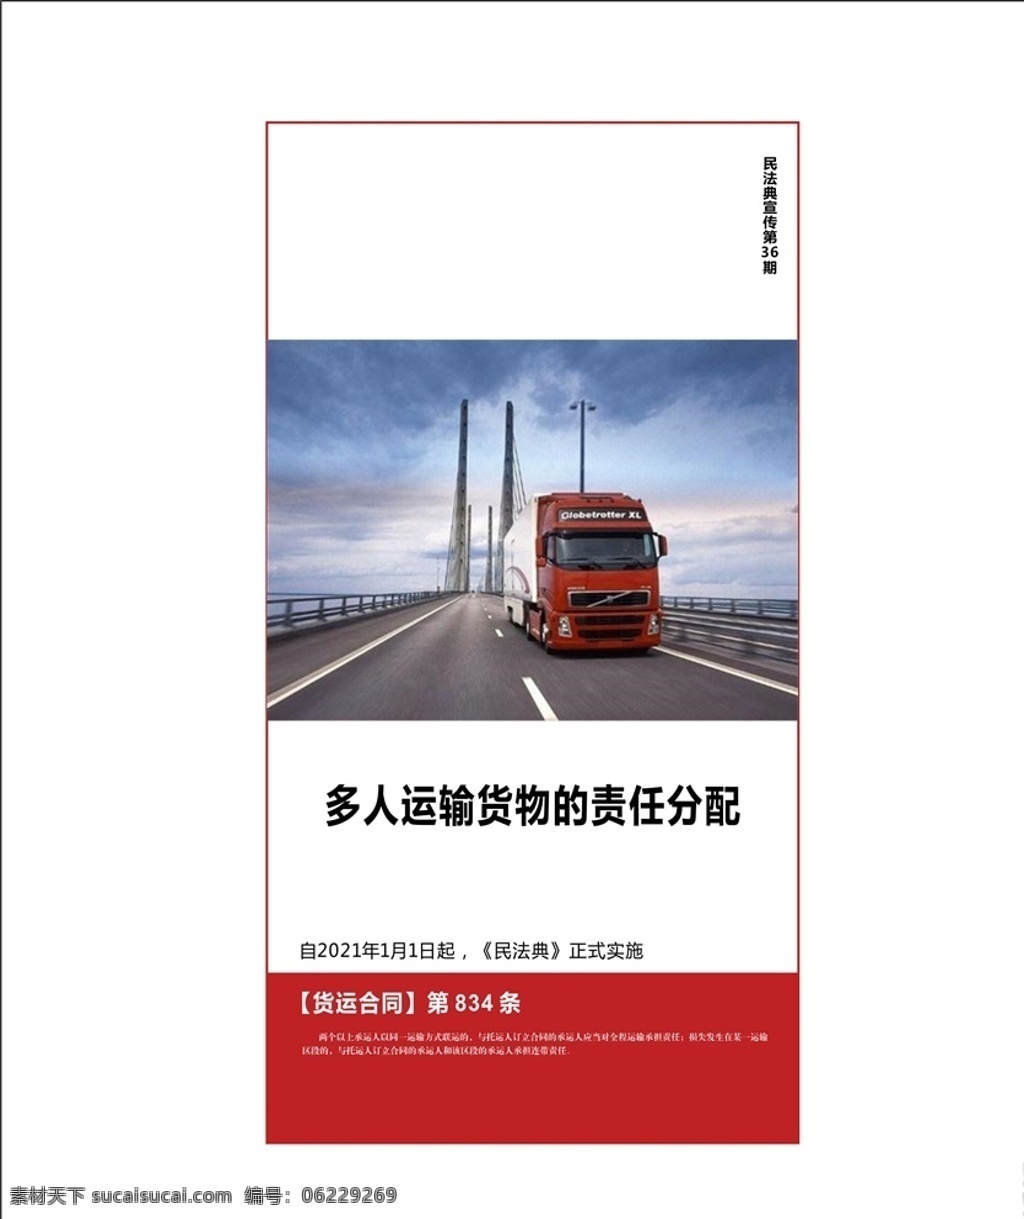 民法典 运输责任图片 运输责任 货车 民法典系列